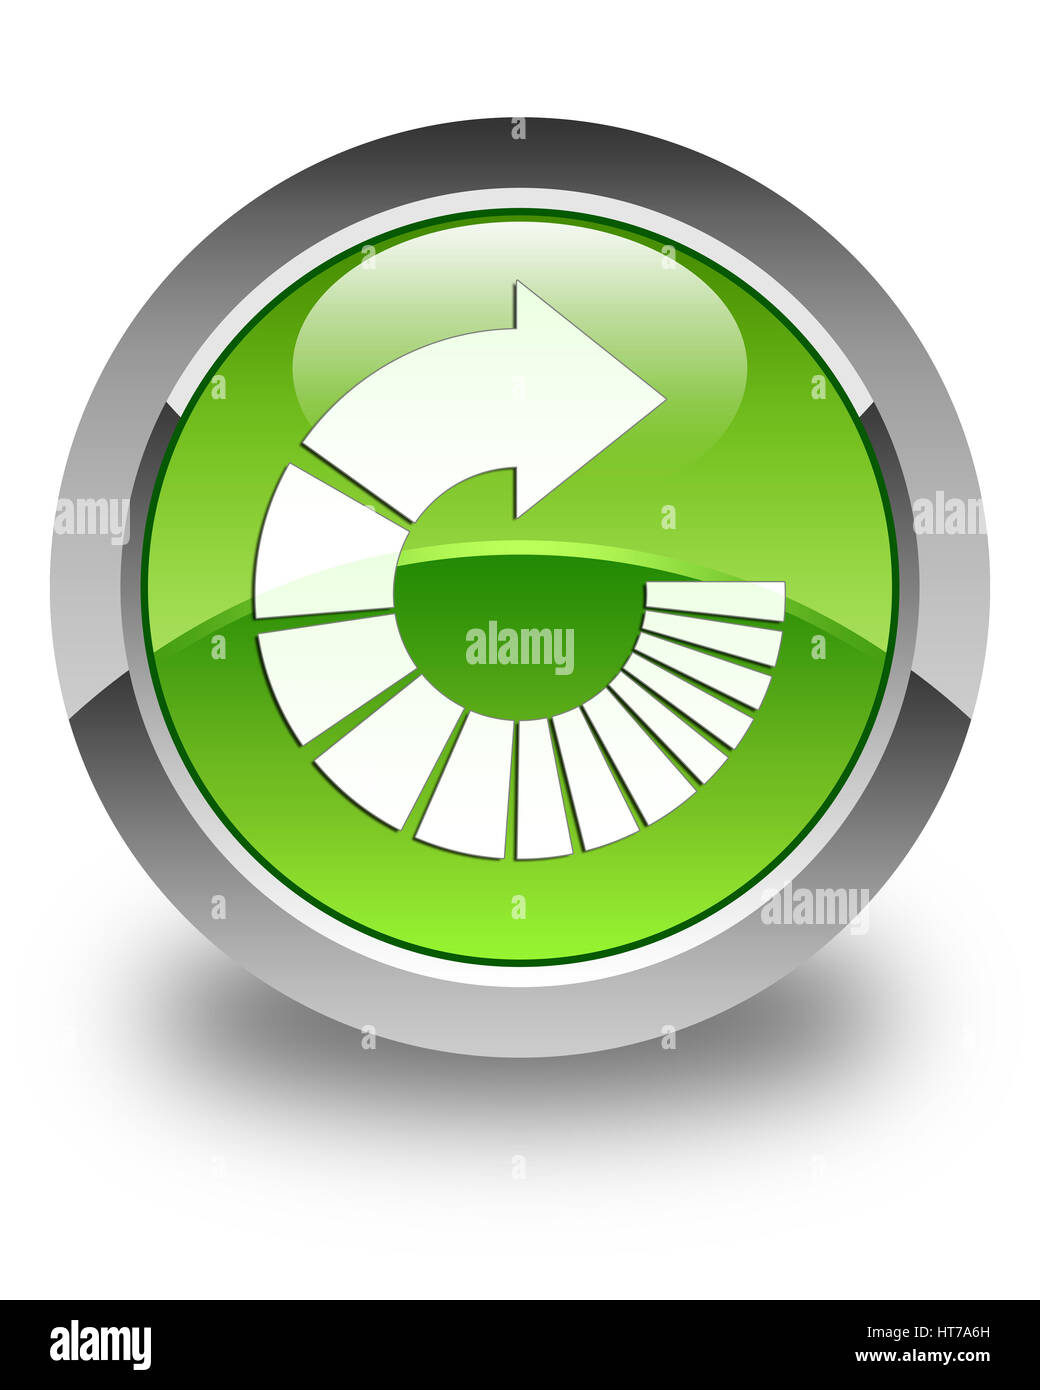 Faire pivoter touches isolées sur l'icône bouton rond vert brillant abstract illustration Banque D'Images